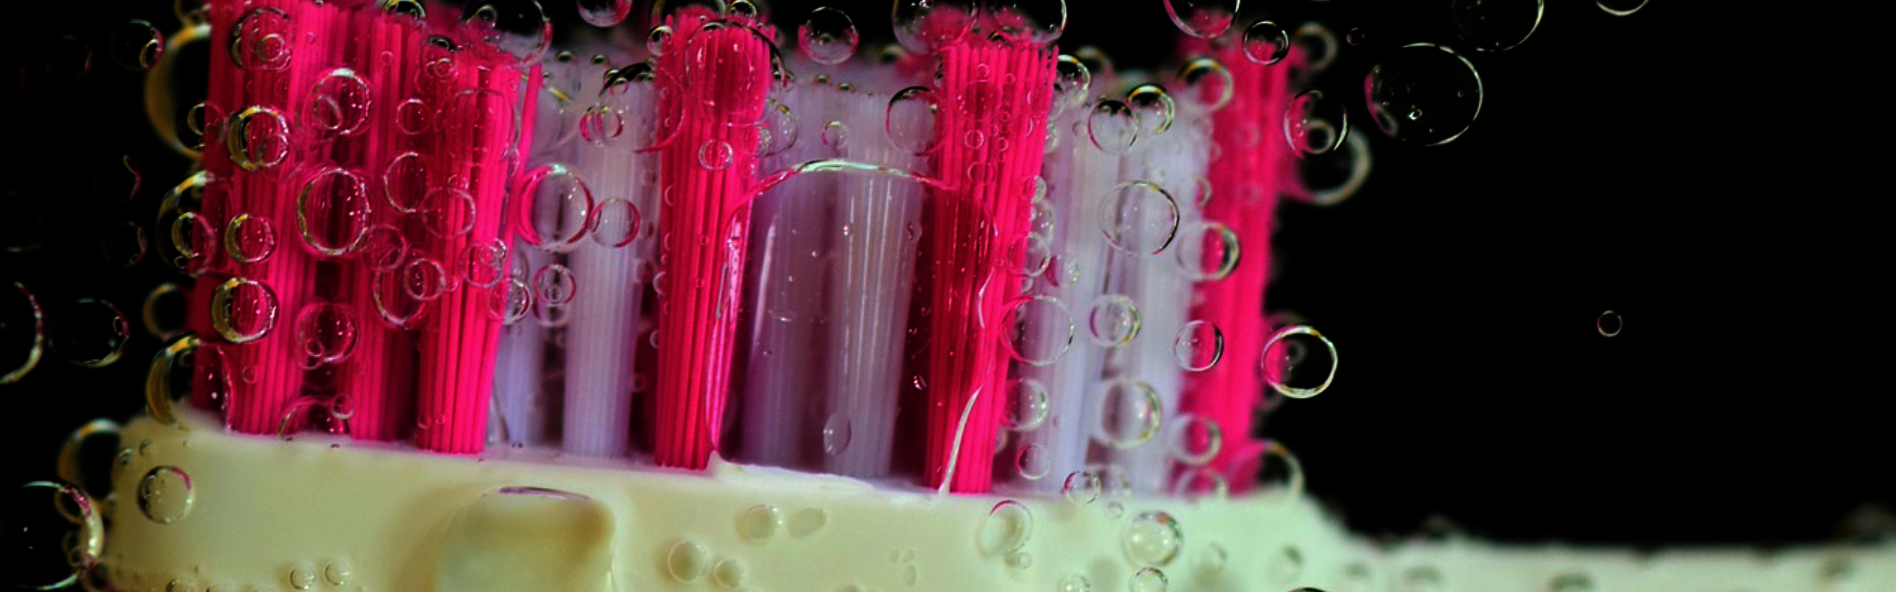 Zu sehen ist eine rosane Zahnbürste mit Blubberblasen.